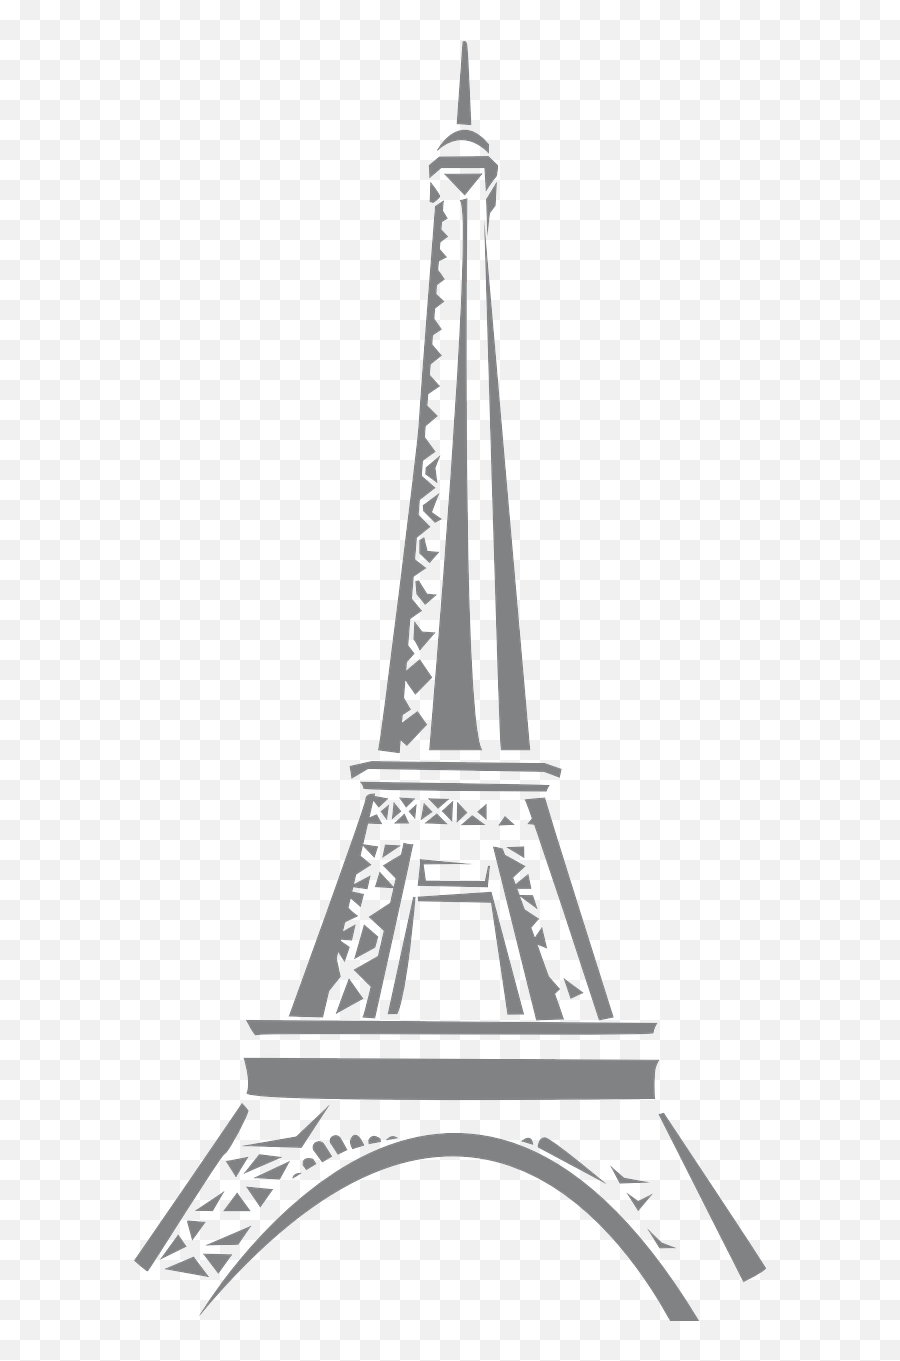 France Eiffel Tower High Symbol - France Symbols Eiffel Tower Png,Eiffel Tower Transparent Background